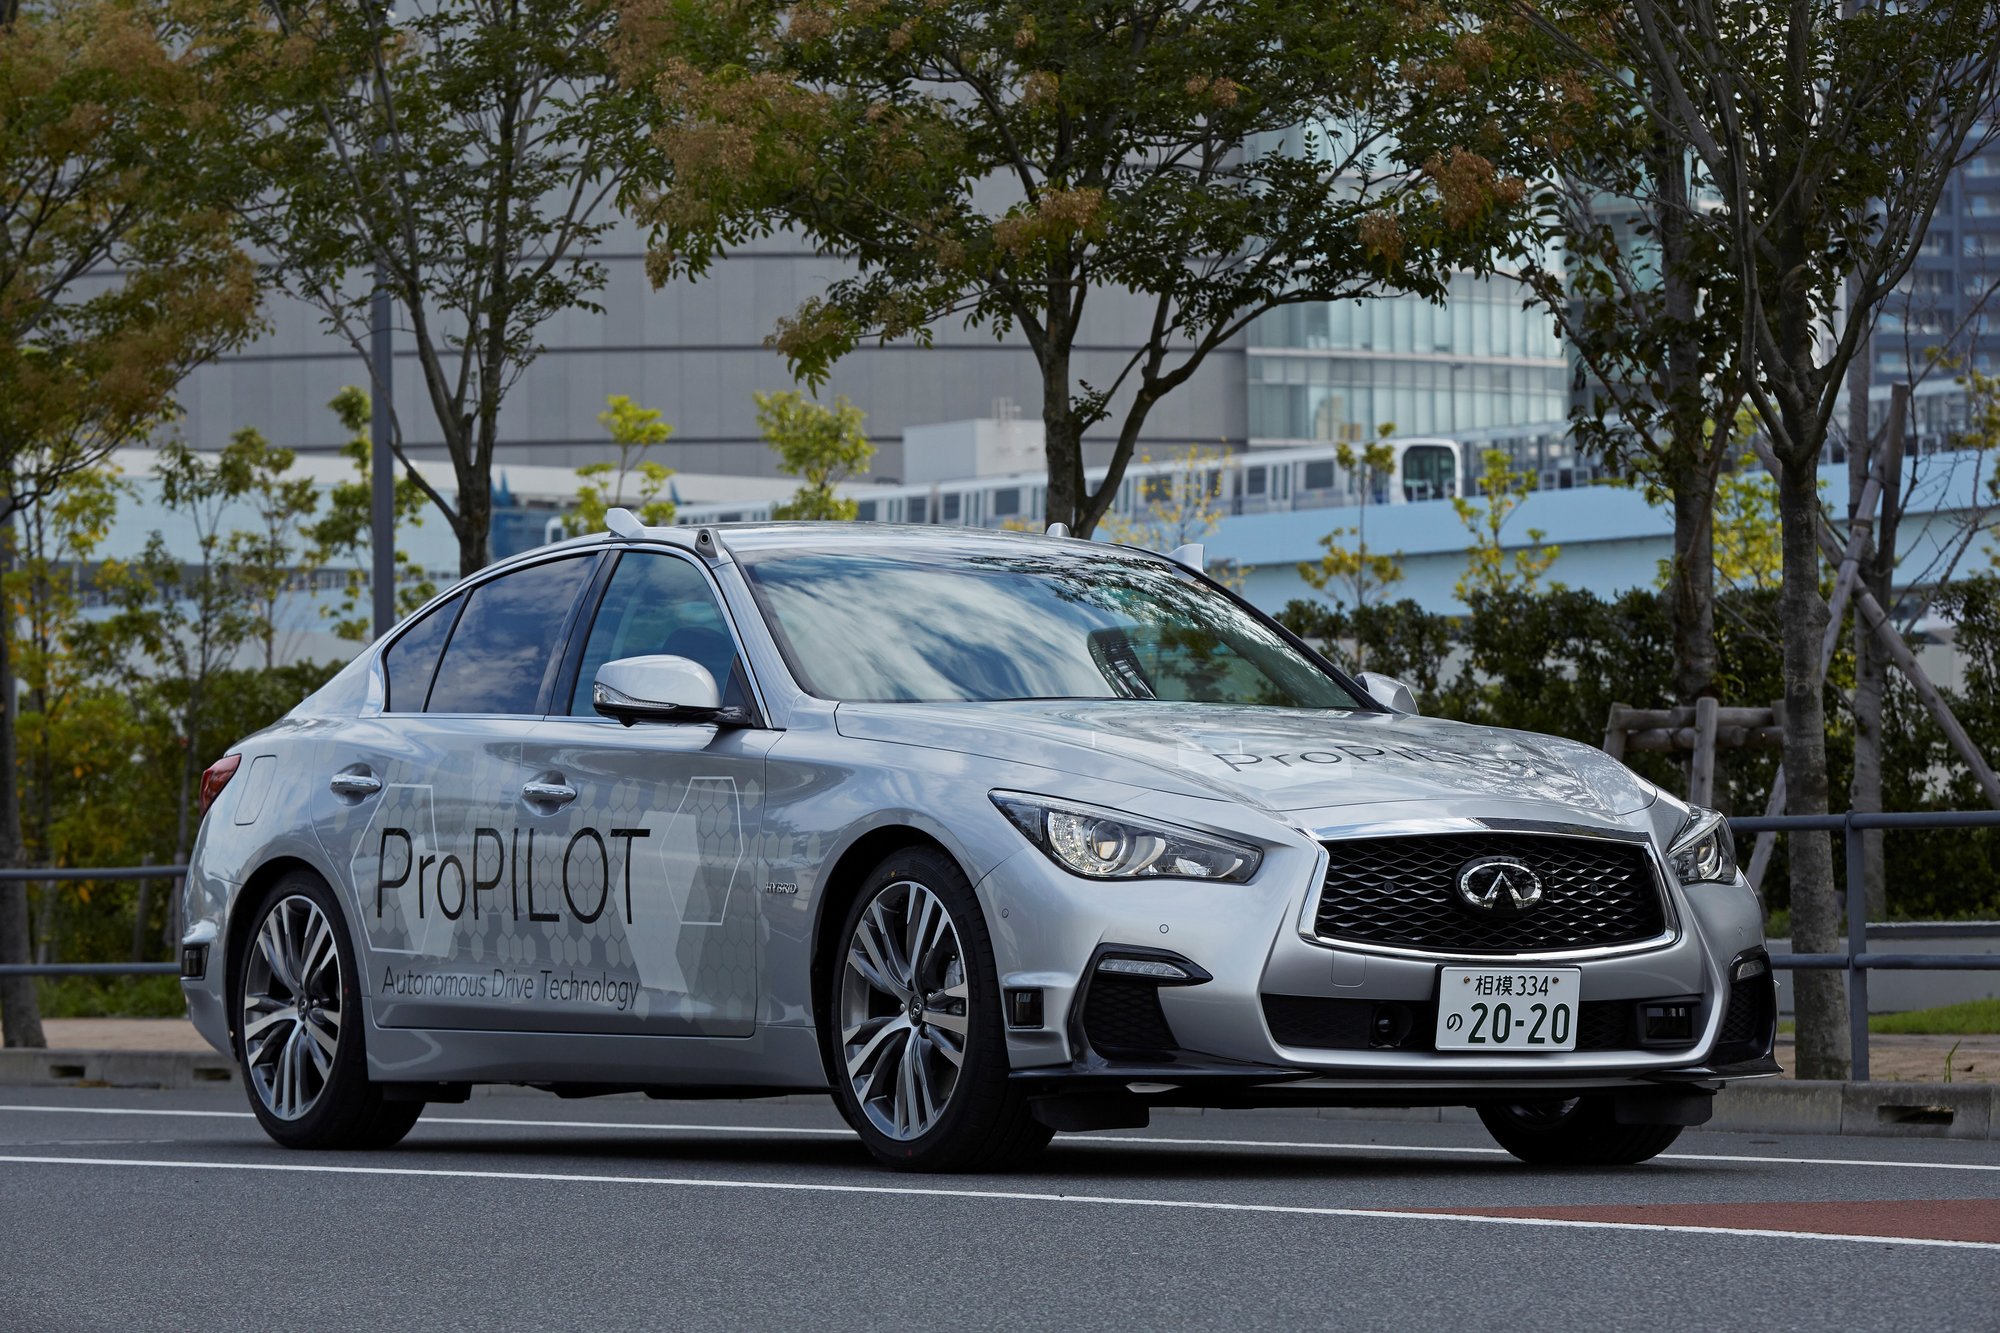 Automobil Infiniti Q50 vybavený autonomním systémem ProPILOT je testován v ulicích Tokia